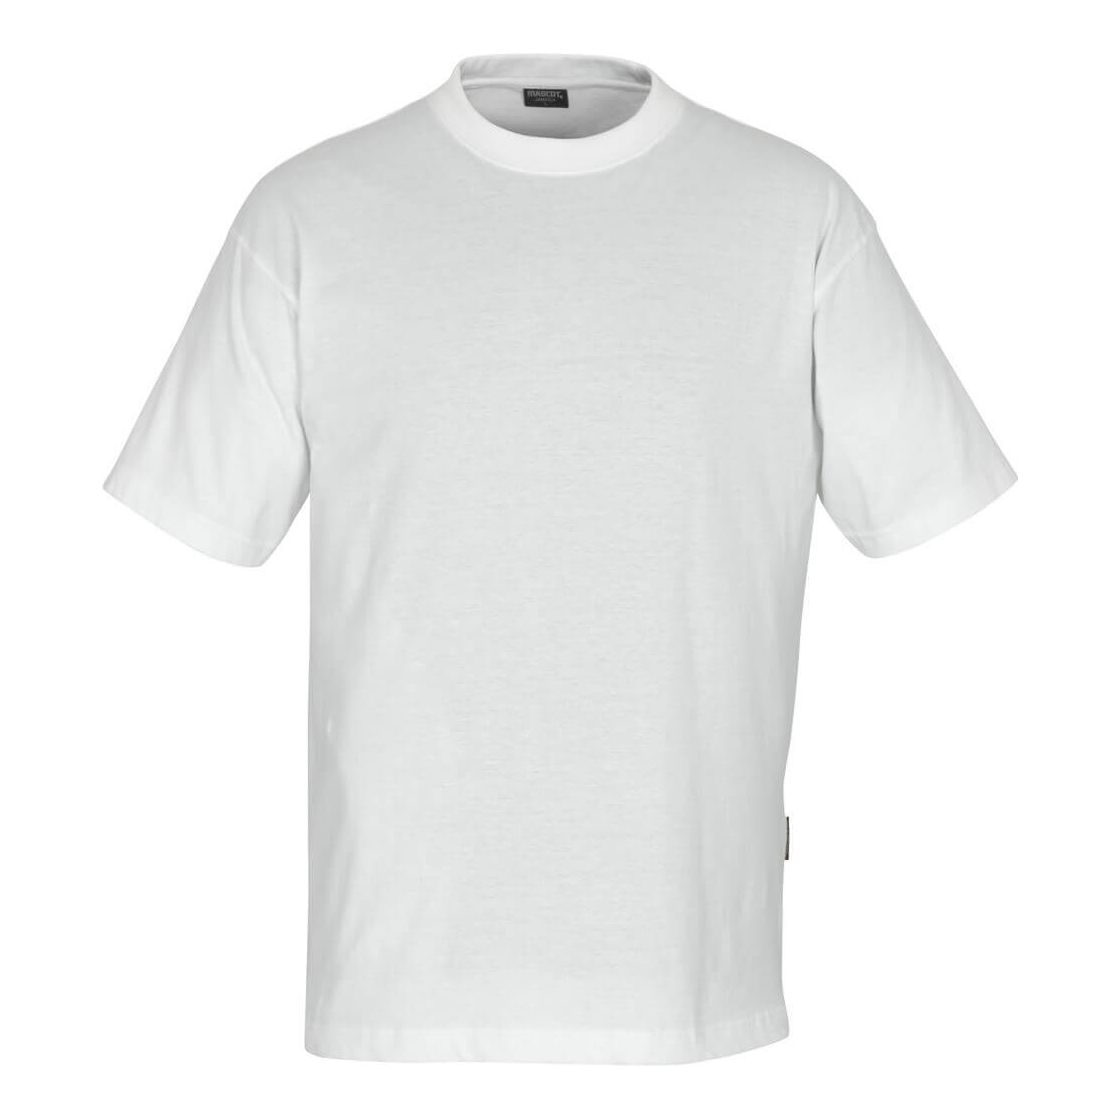 Mascot Jamaica T-shirt Round-Neck 00788-200 Front #colour_white